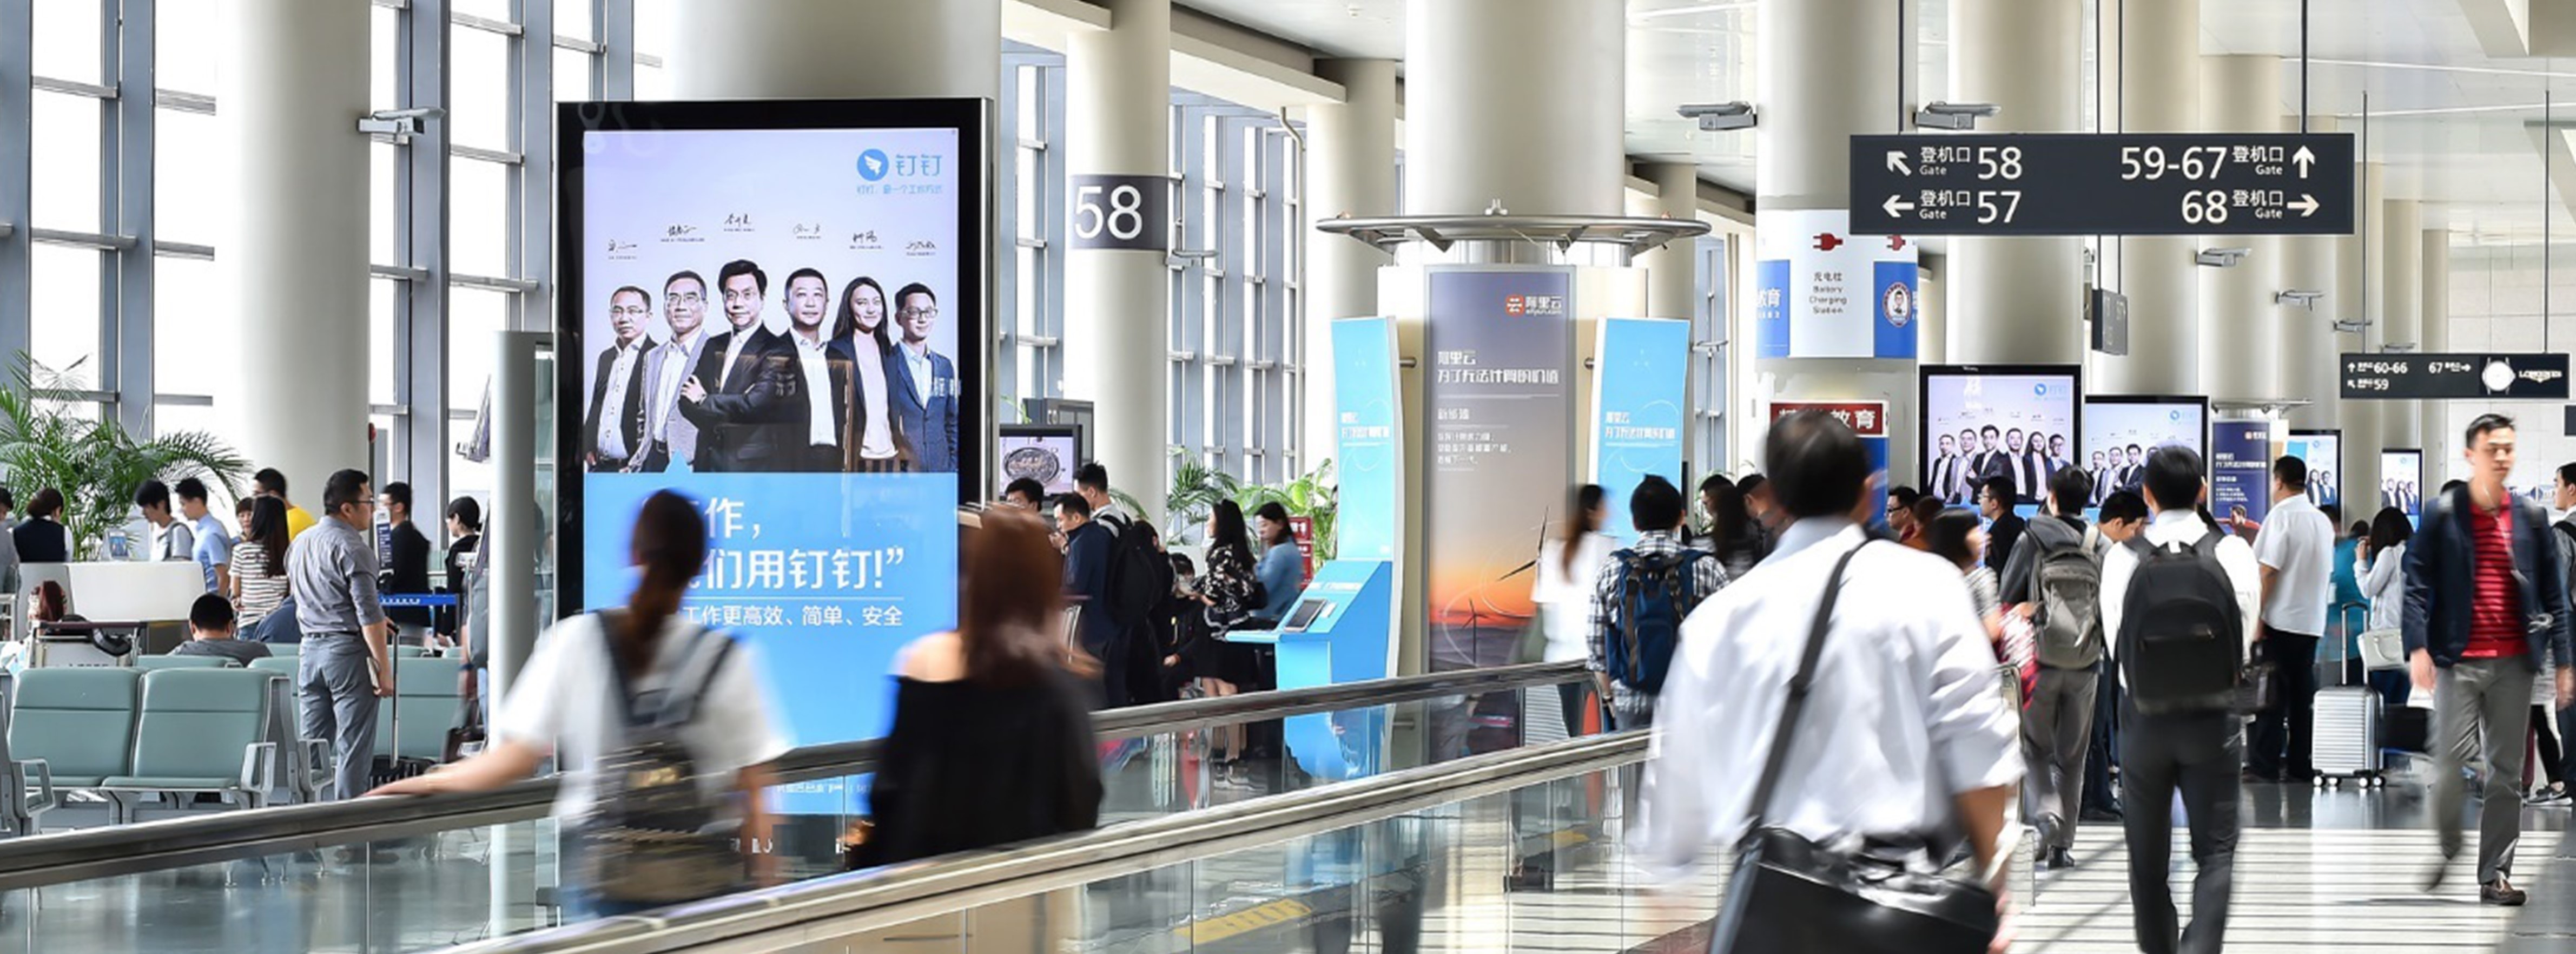 上海机场广告-虹桥T2国内出发到达刷屏